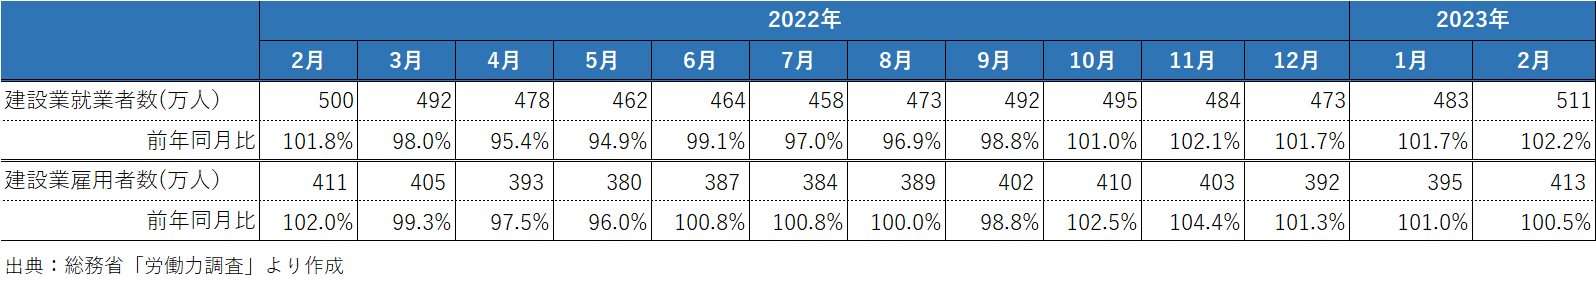 202304_1_建設業の就業者数と雇用者数の推移